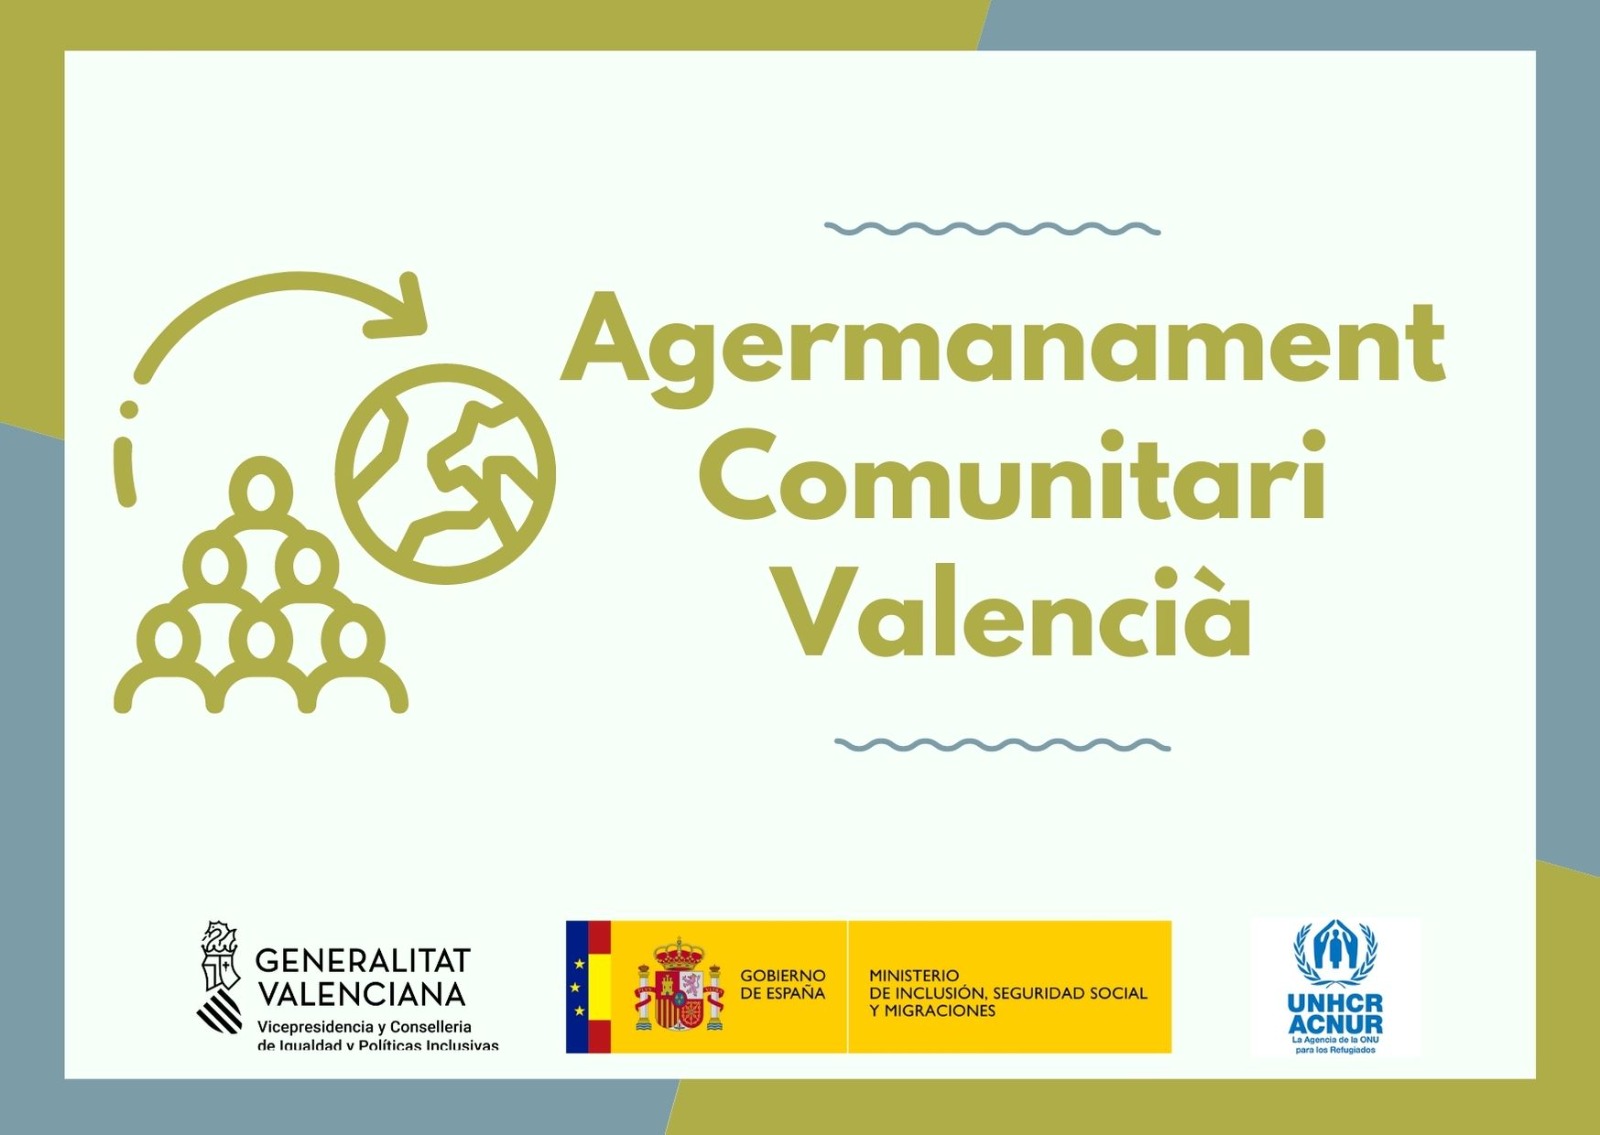 Igualtat posa en marxa en la Comunitat Valenciana un projecte d'acolliment a persones refugiades patrocinat per ACNUR que implica la ciutadania en l'acolliment